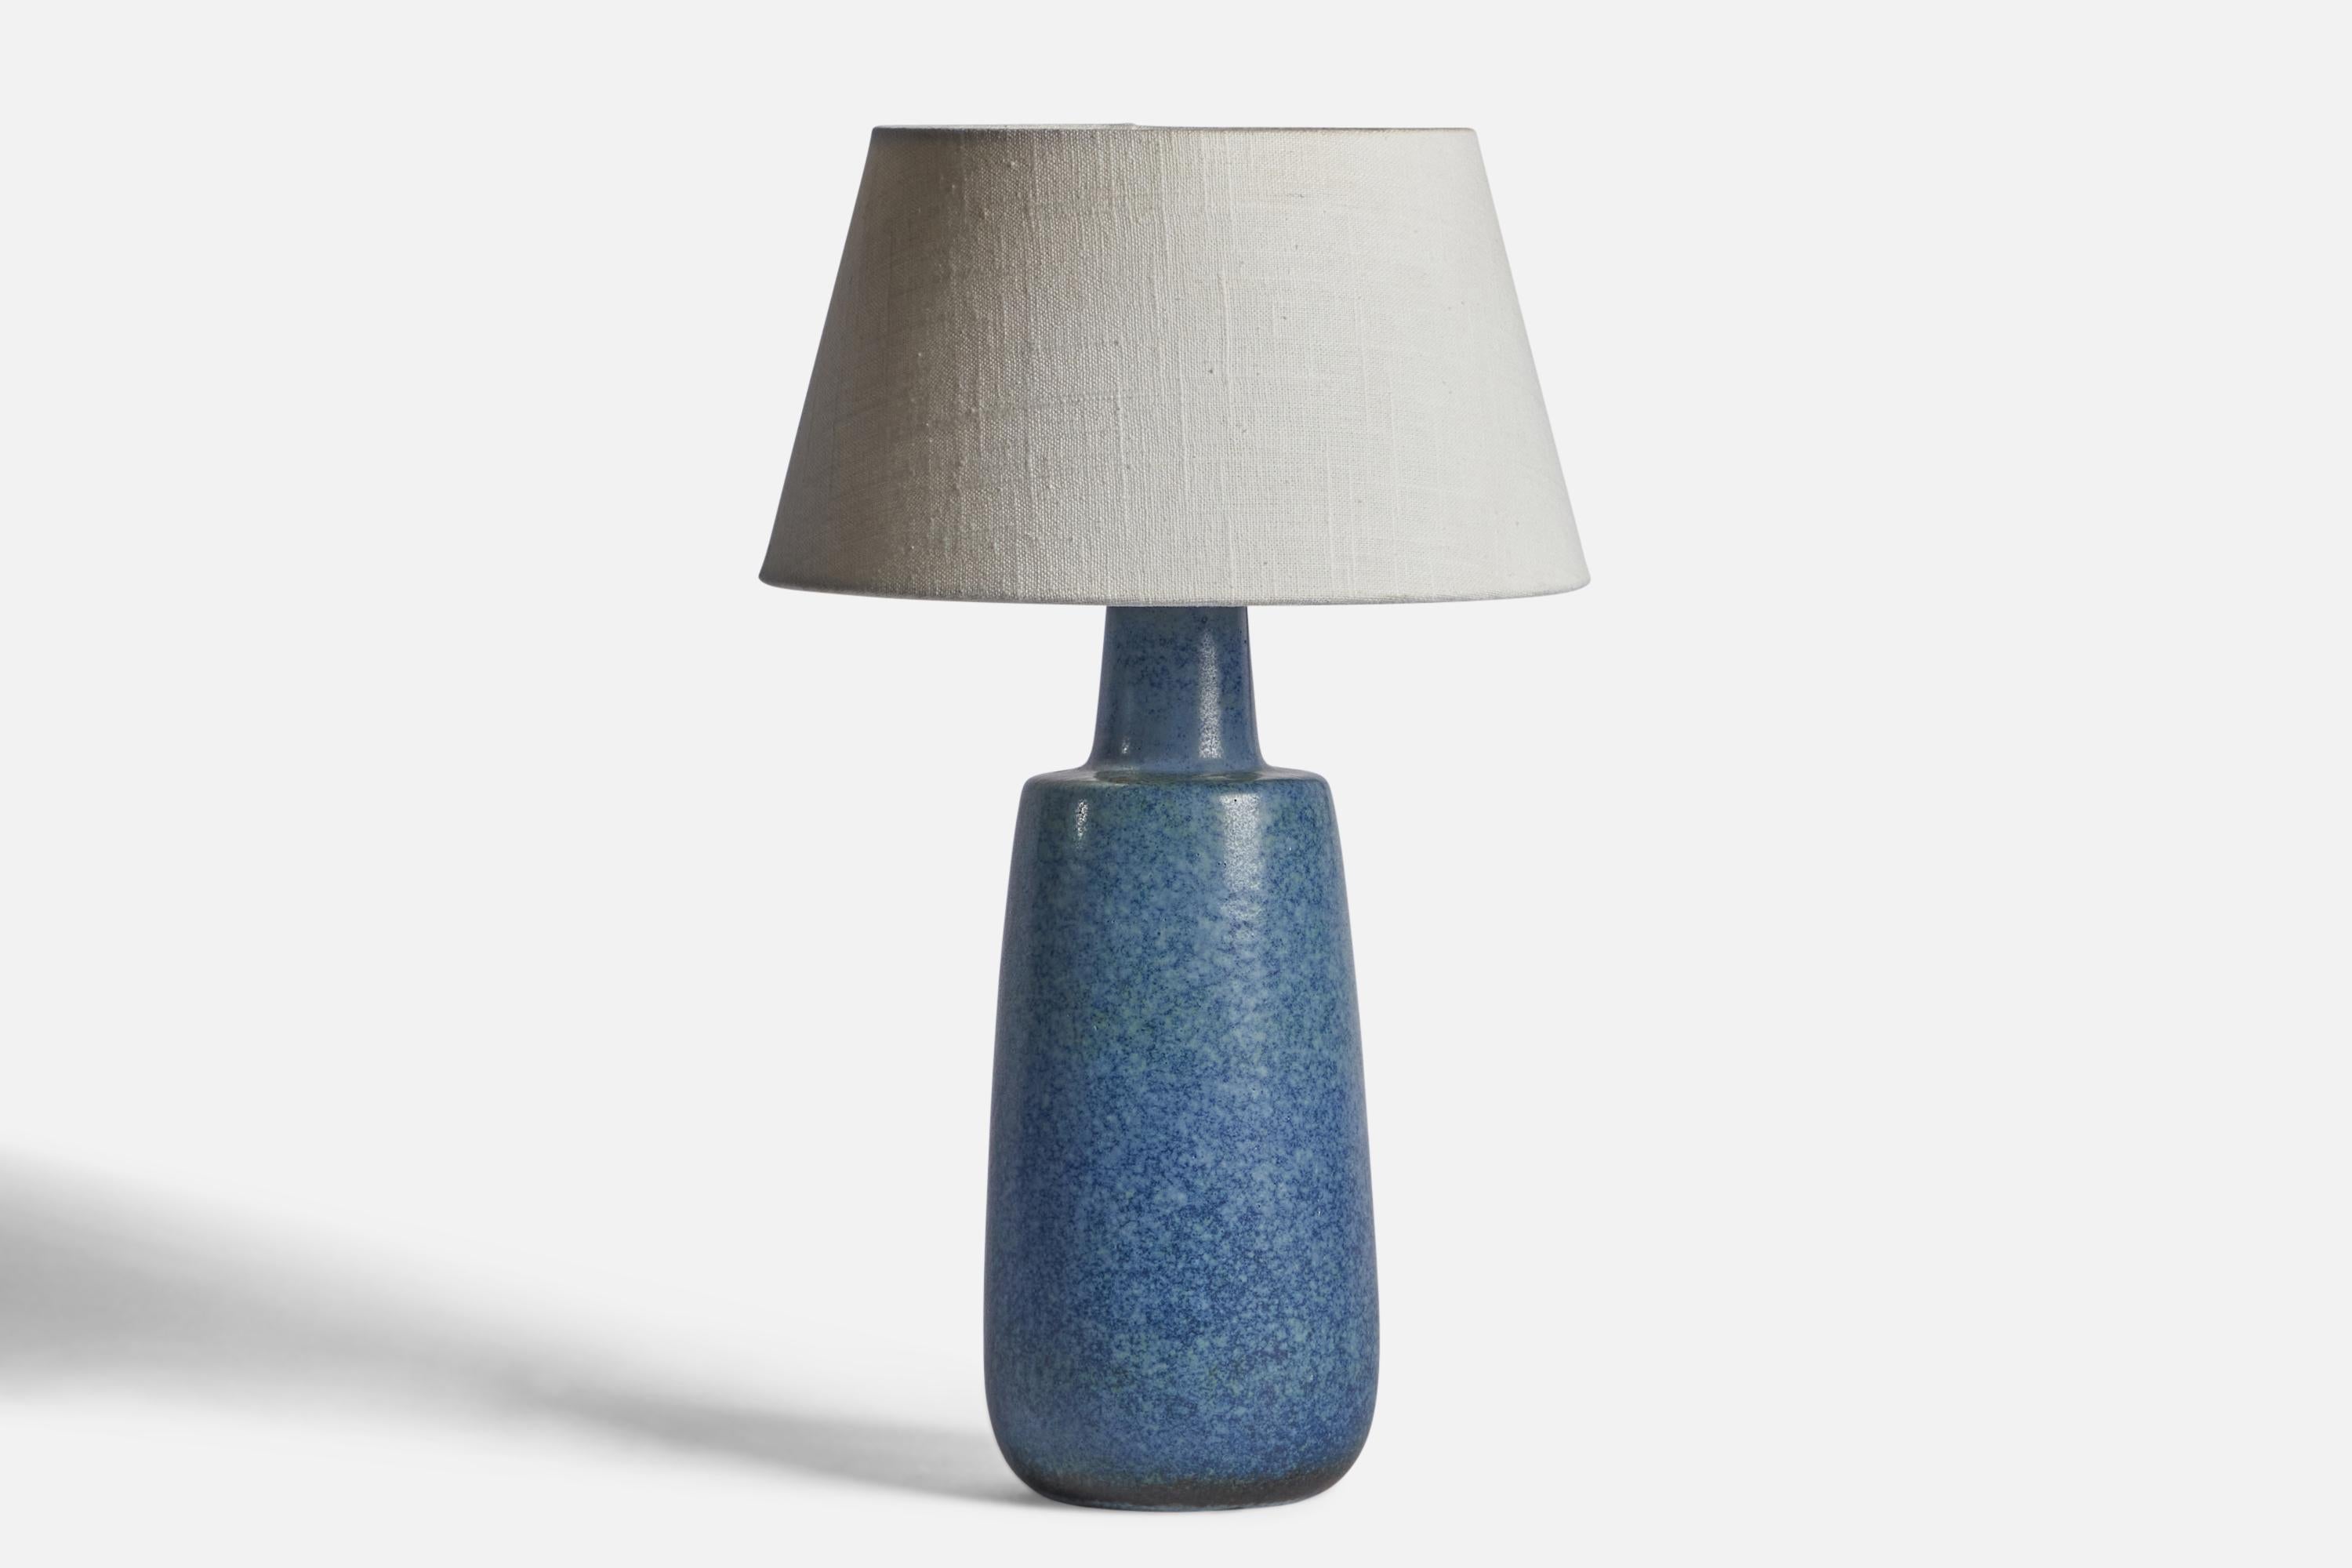 Lampe de table en grès émaillé bleu, conçue par Carl-Harry Stålhane et produite par Rörstrand, Suède, années 1950.

Dimensions de la lampe (pouces) : 13.6